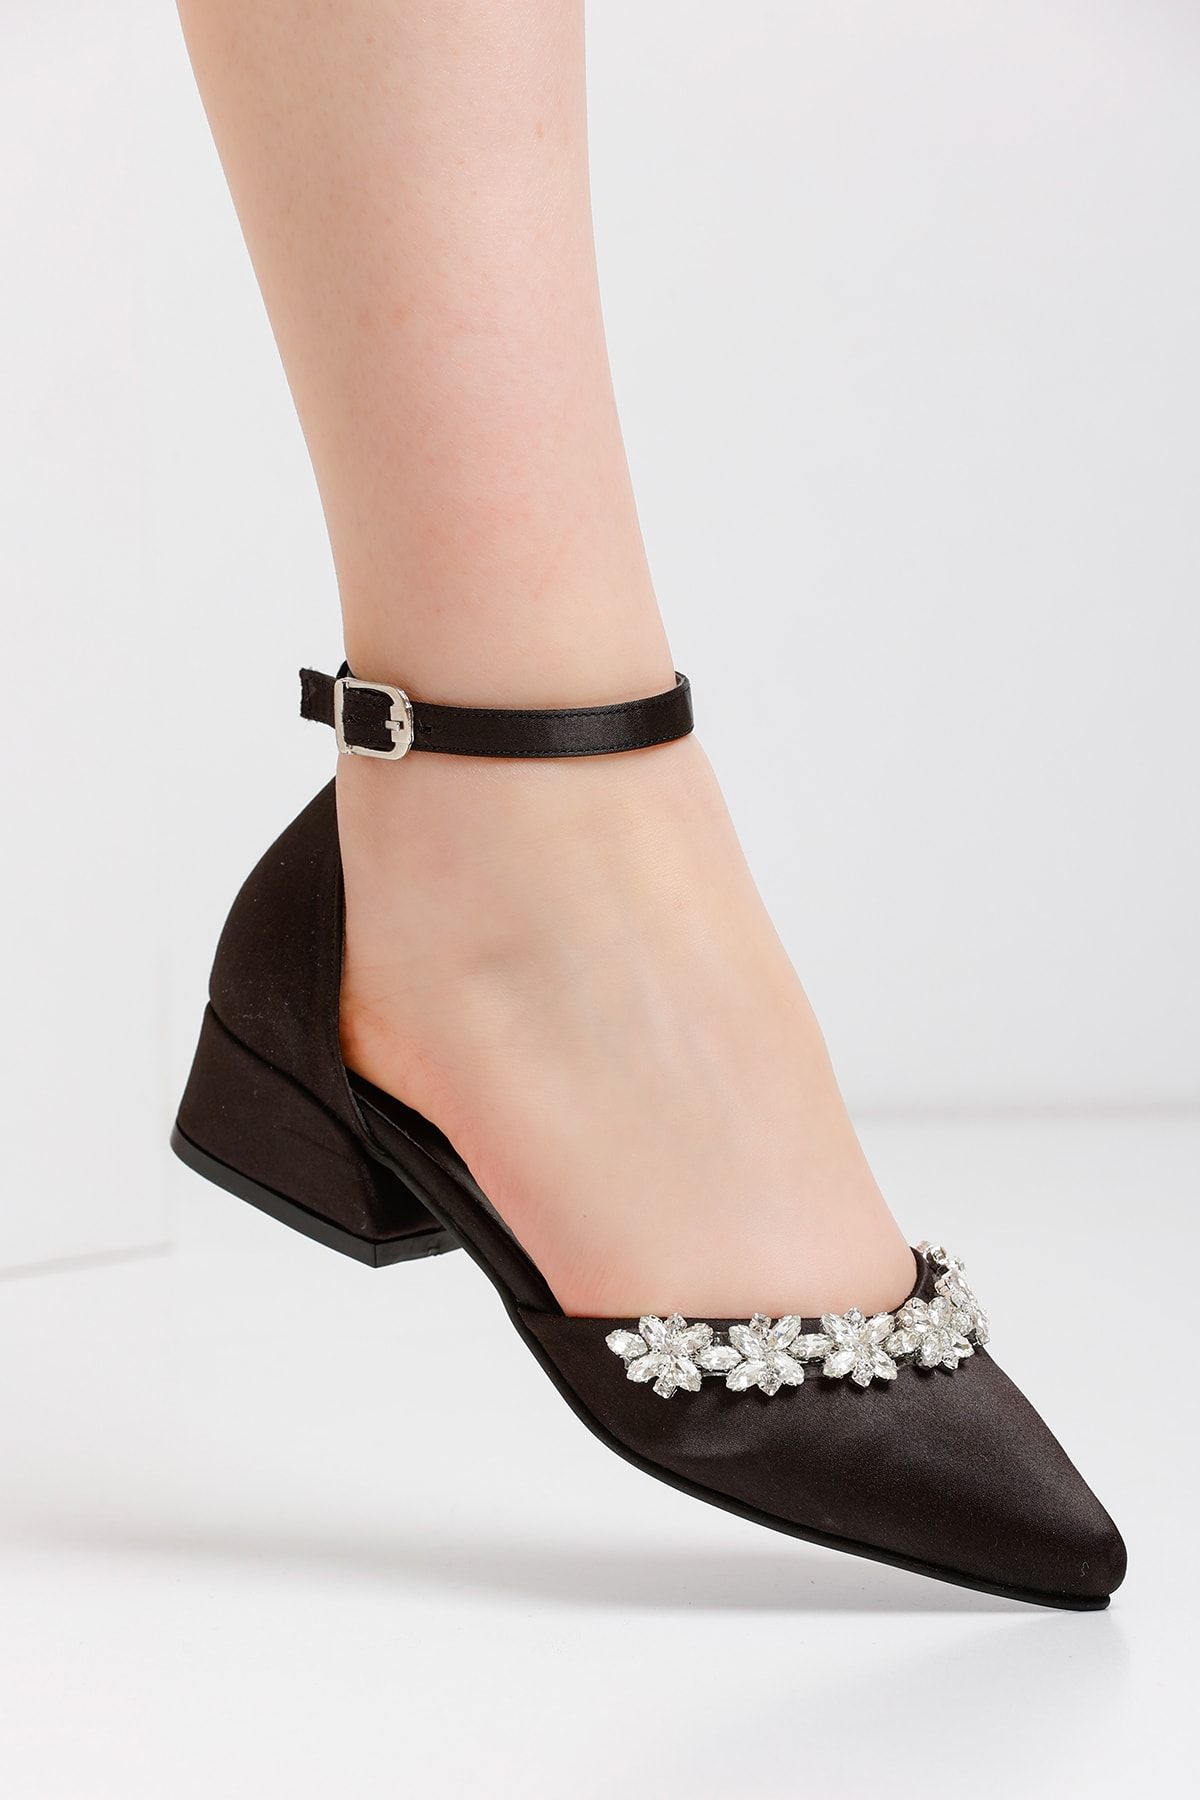 FORS SHOES Kadın Siyah Saten Şerit Taş Detaylı Abiye Ayakkabı Topuklu Ayakkabı 3,5 Cm